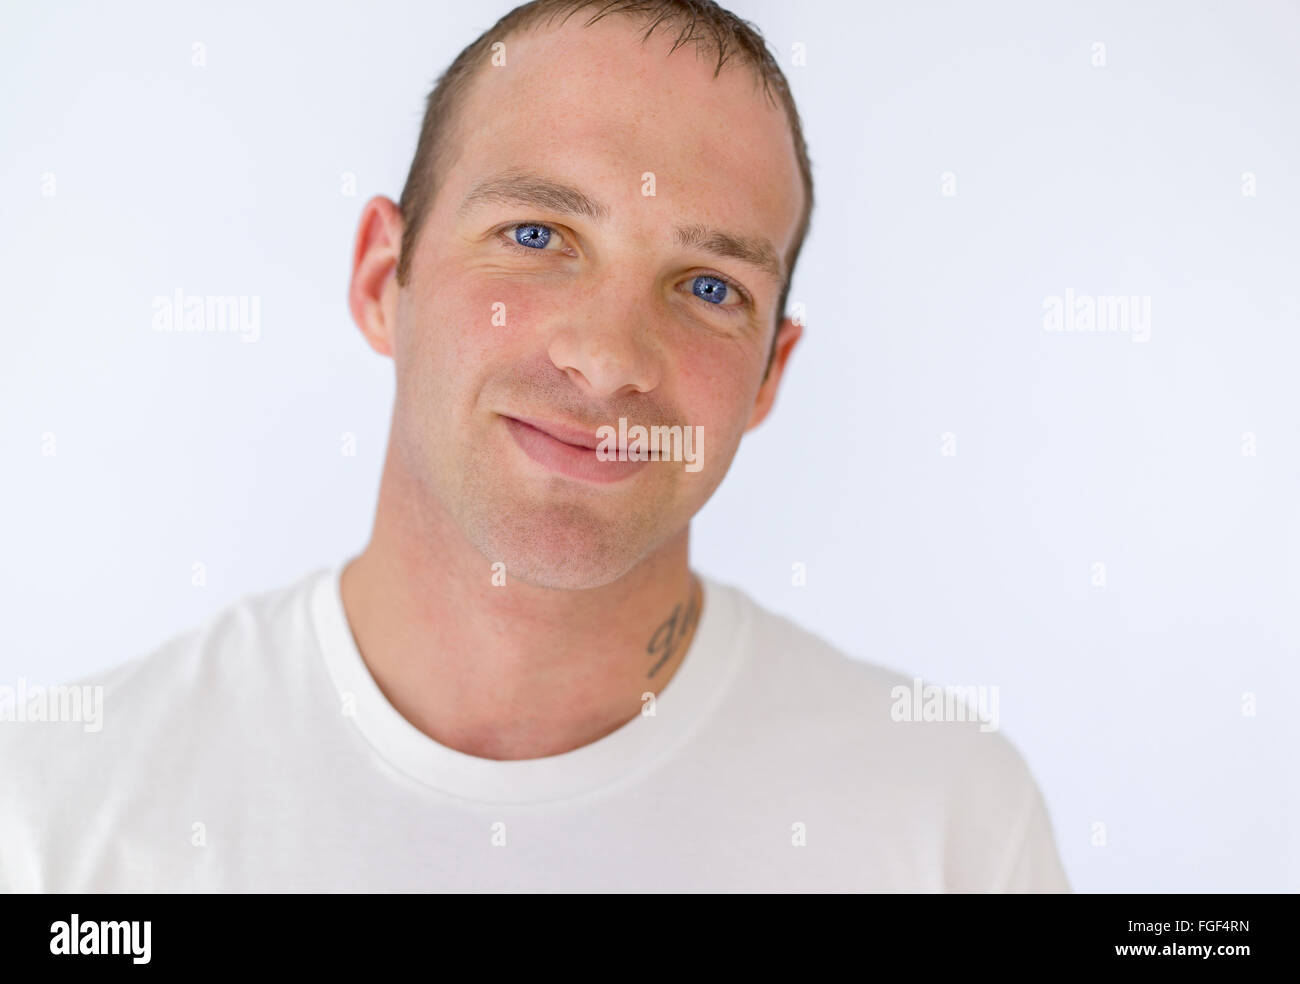 Retrato de un hombre que llevaba una camiseta blanca sonriente Foto de stock